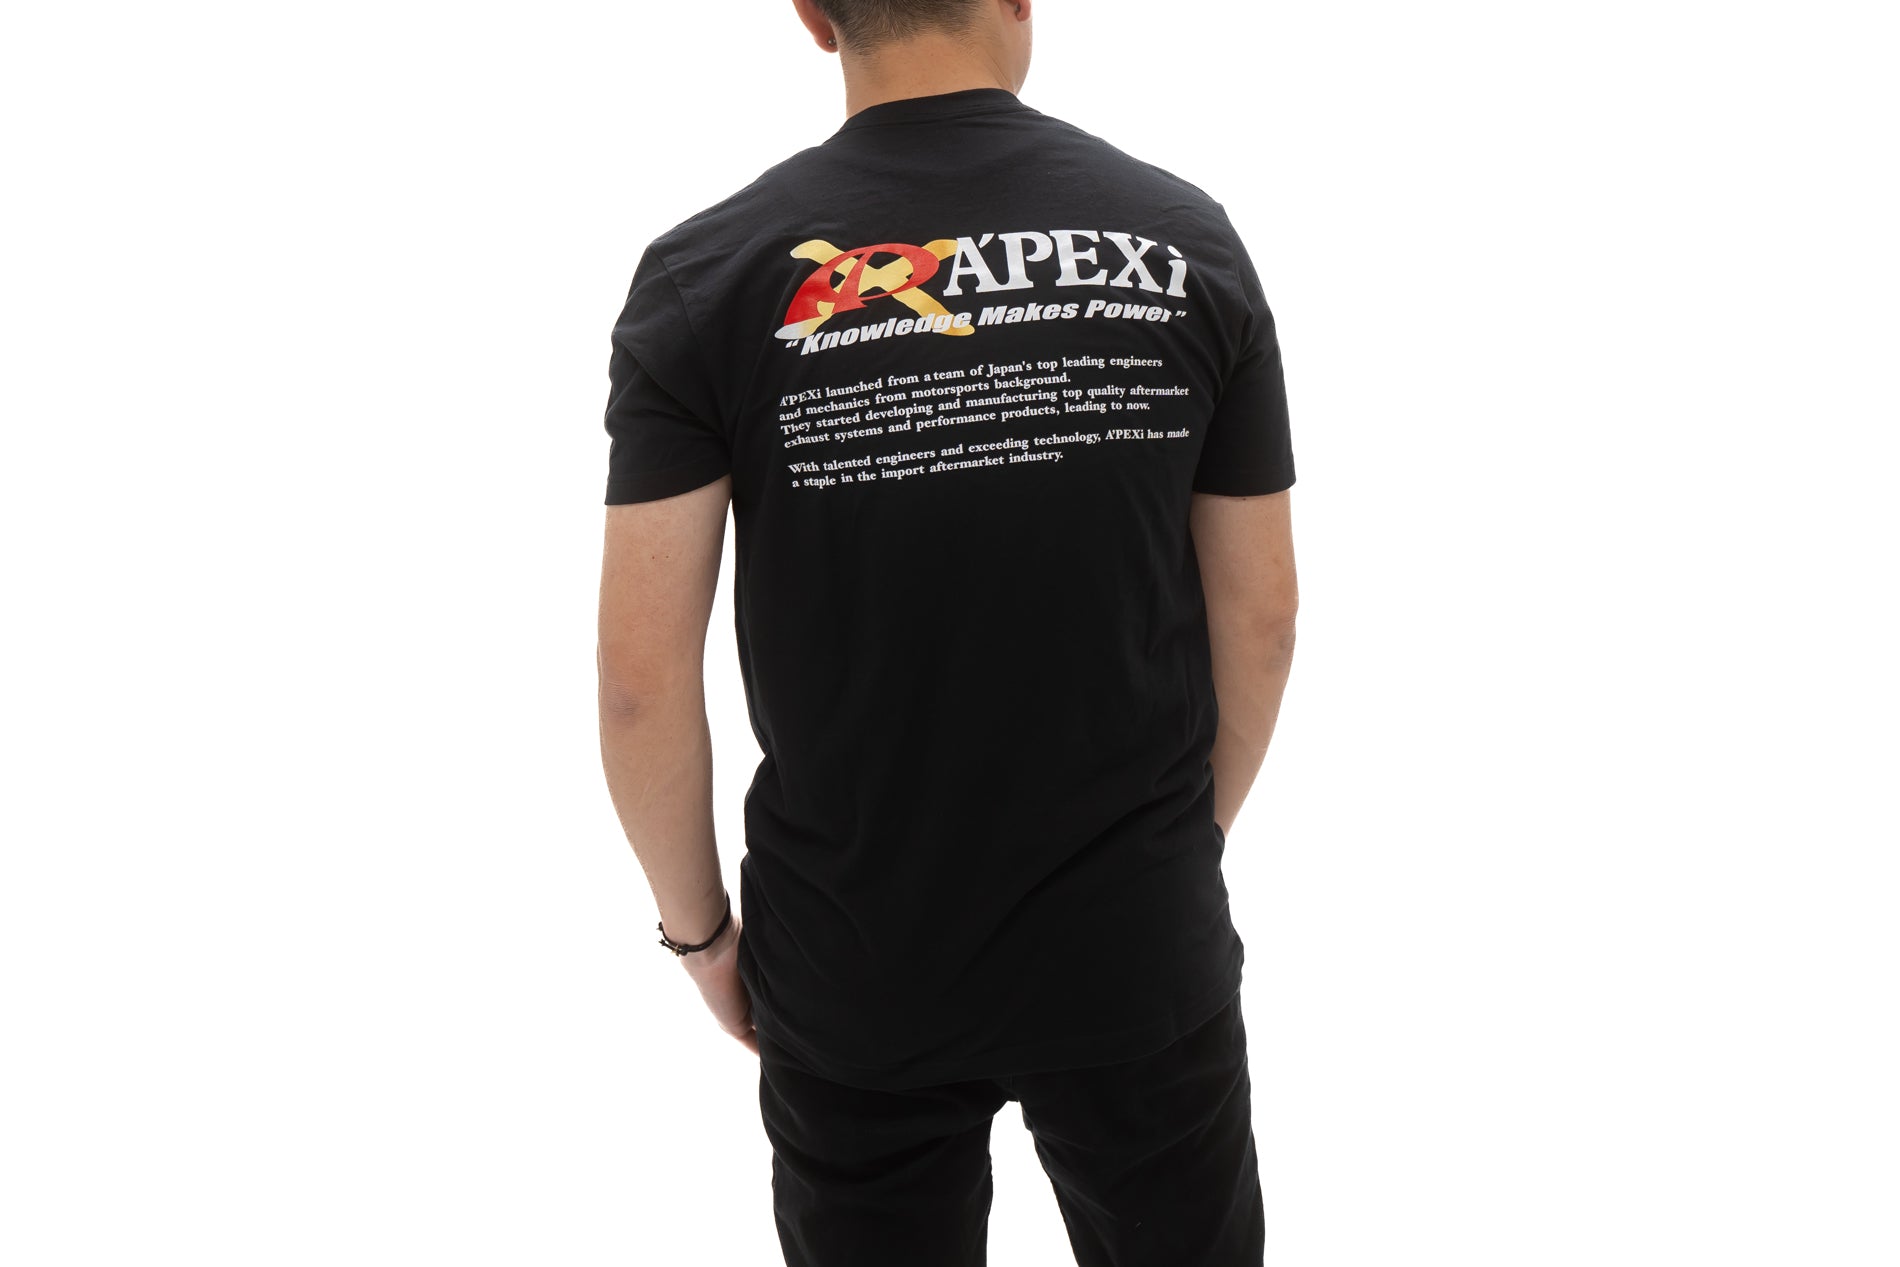 A'PEXi - A'PEXi-X Racing Heritage T-Shirt